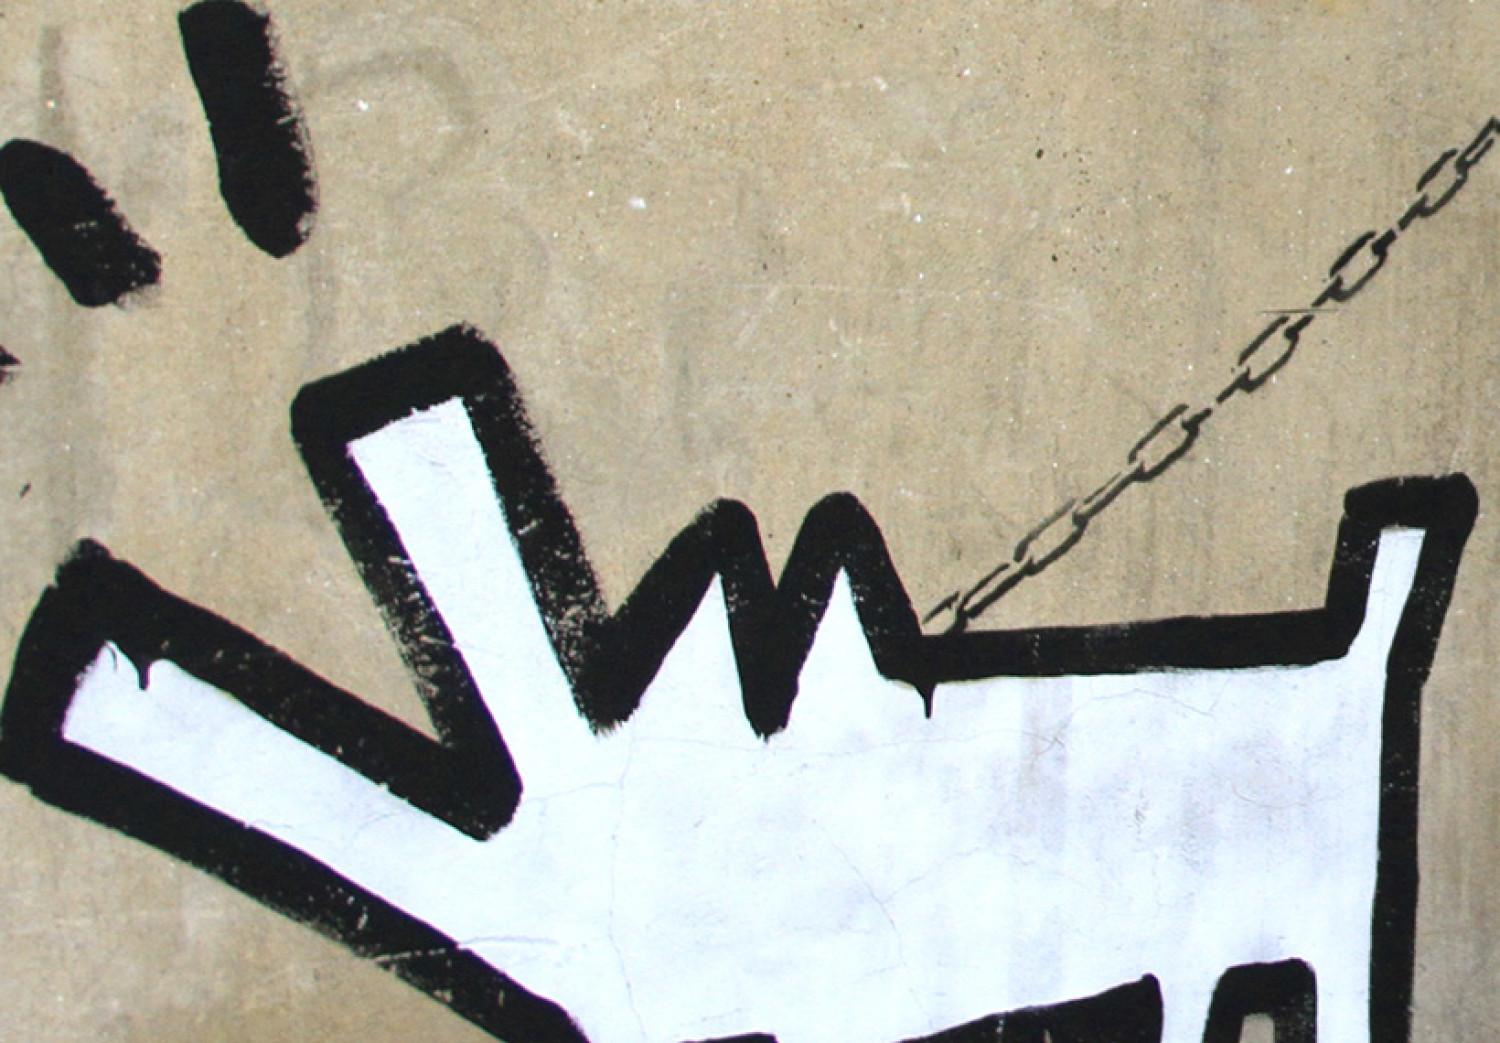 Cuadro moderno Banksy - cuatro ideas orginales